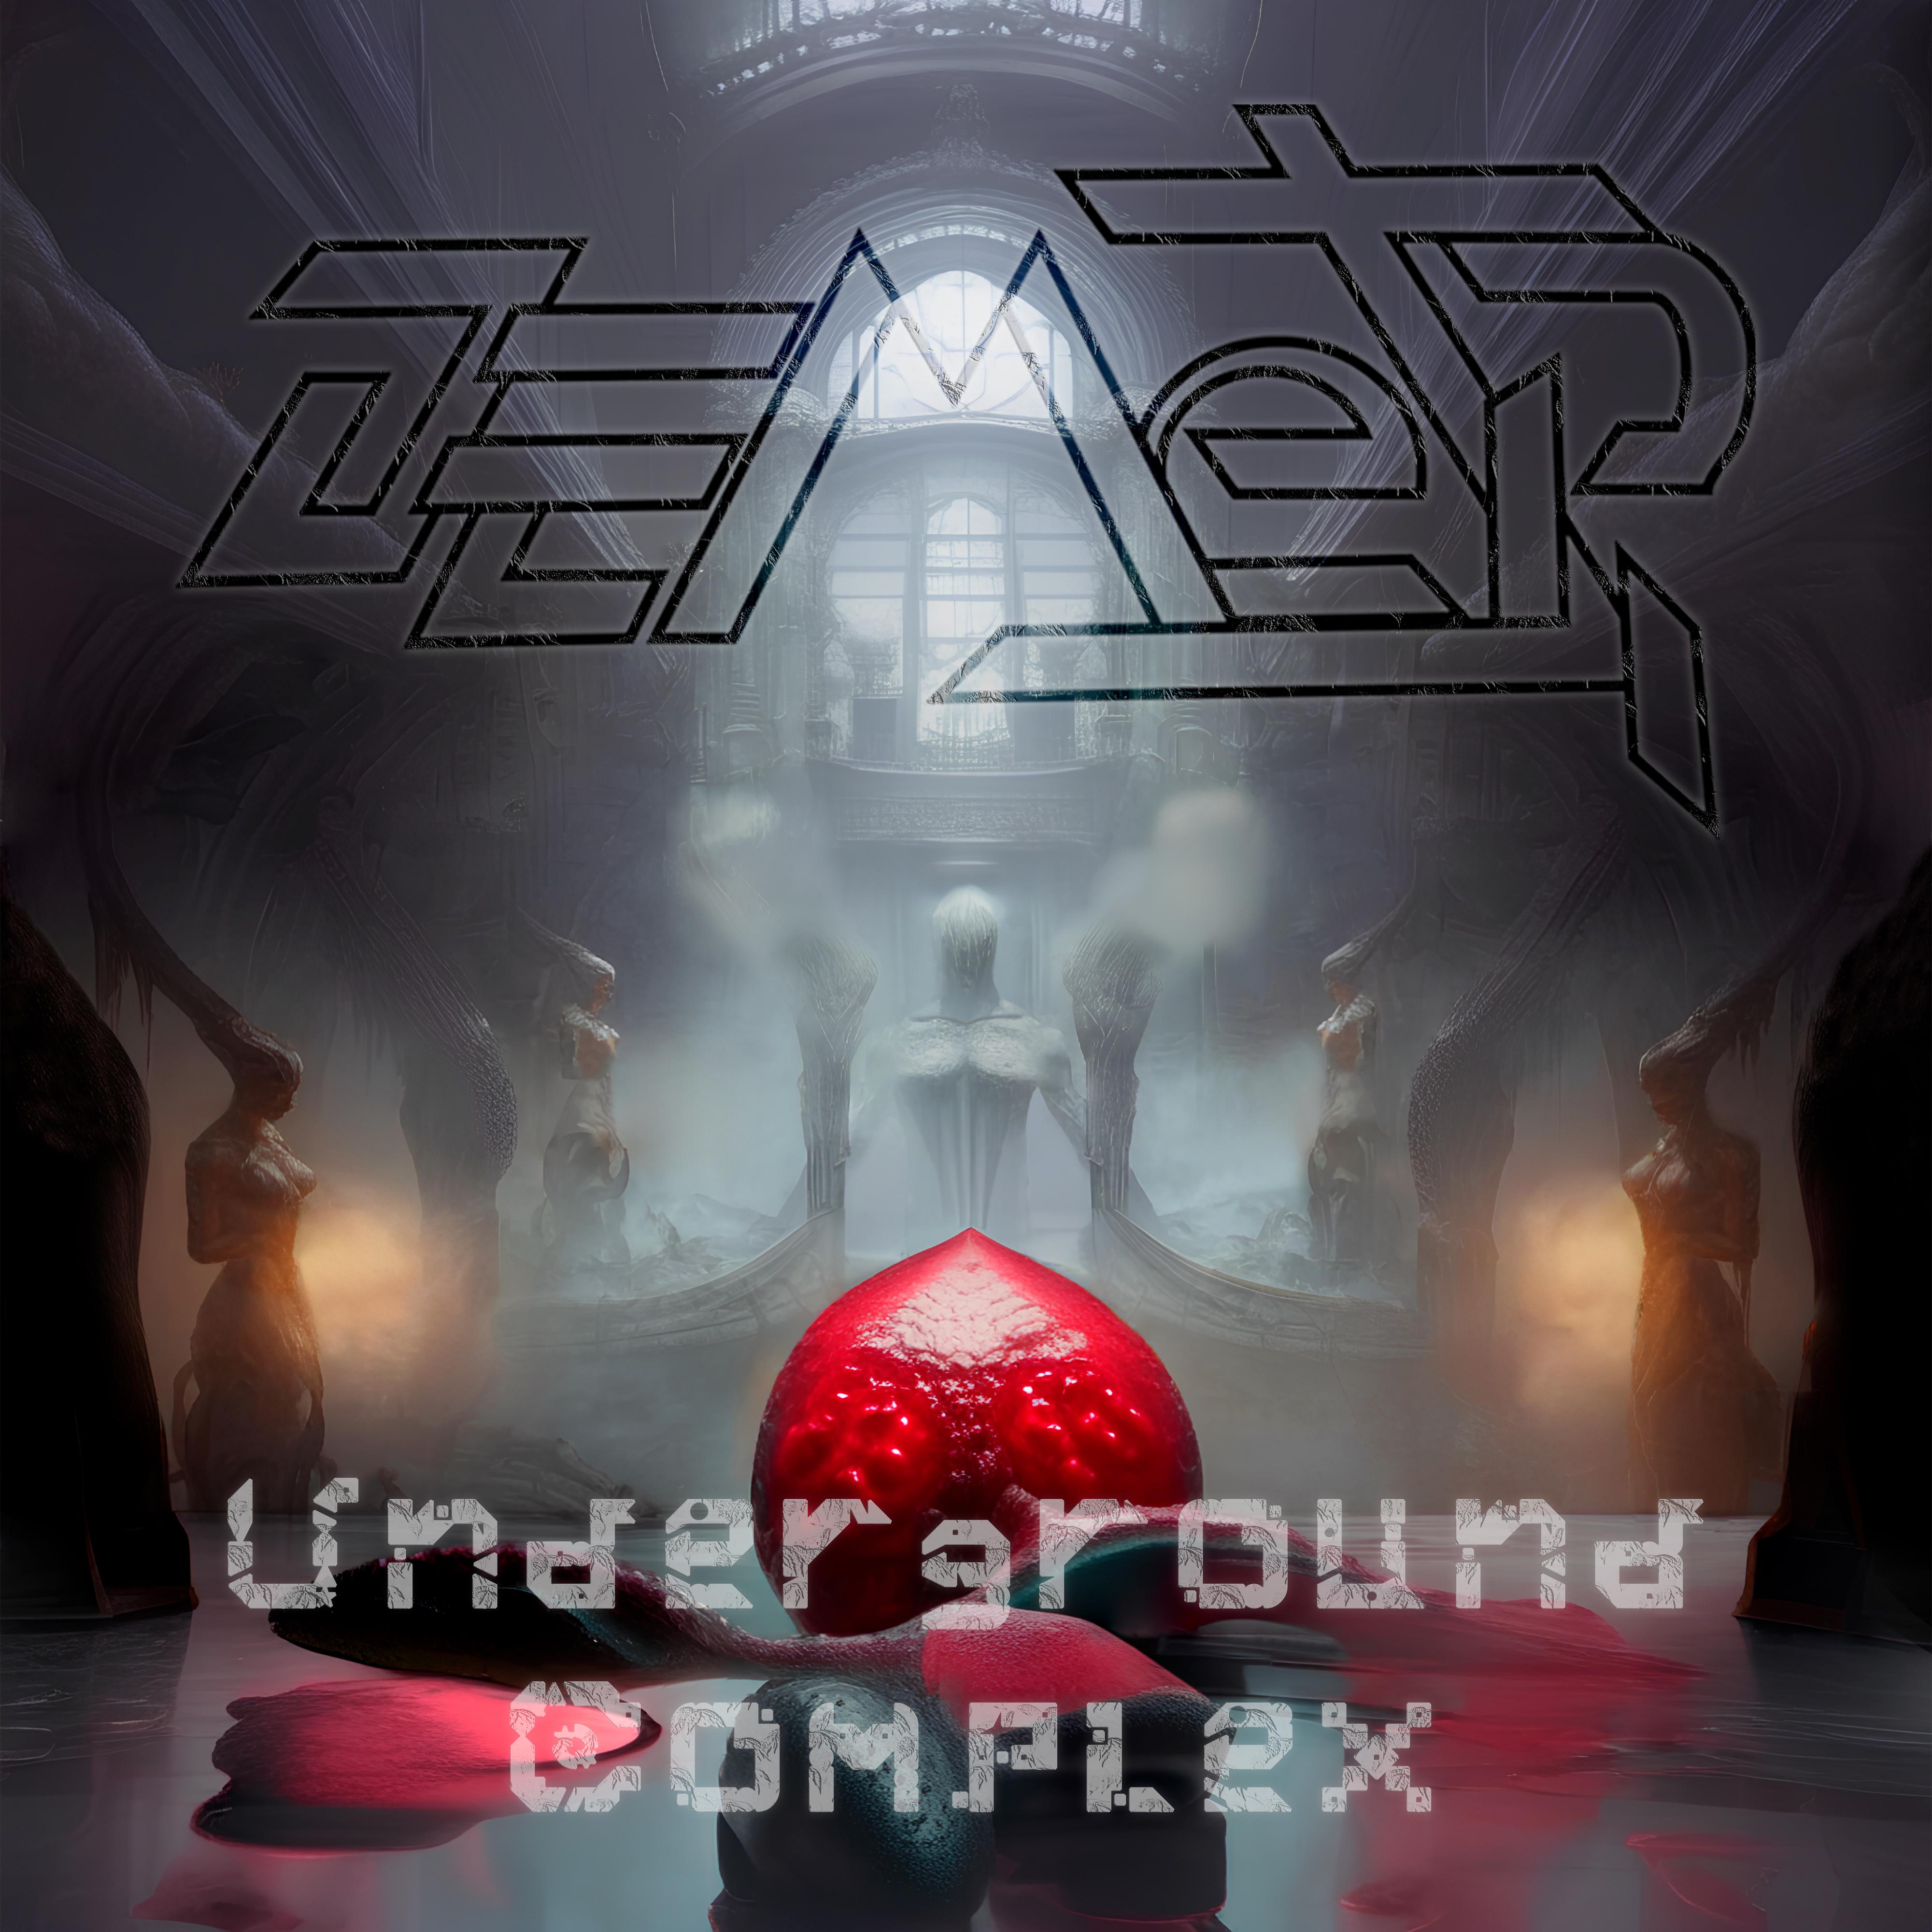 Постер альбома Underground Complex